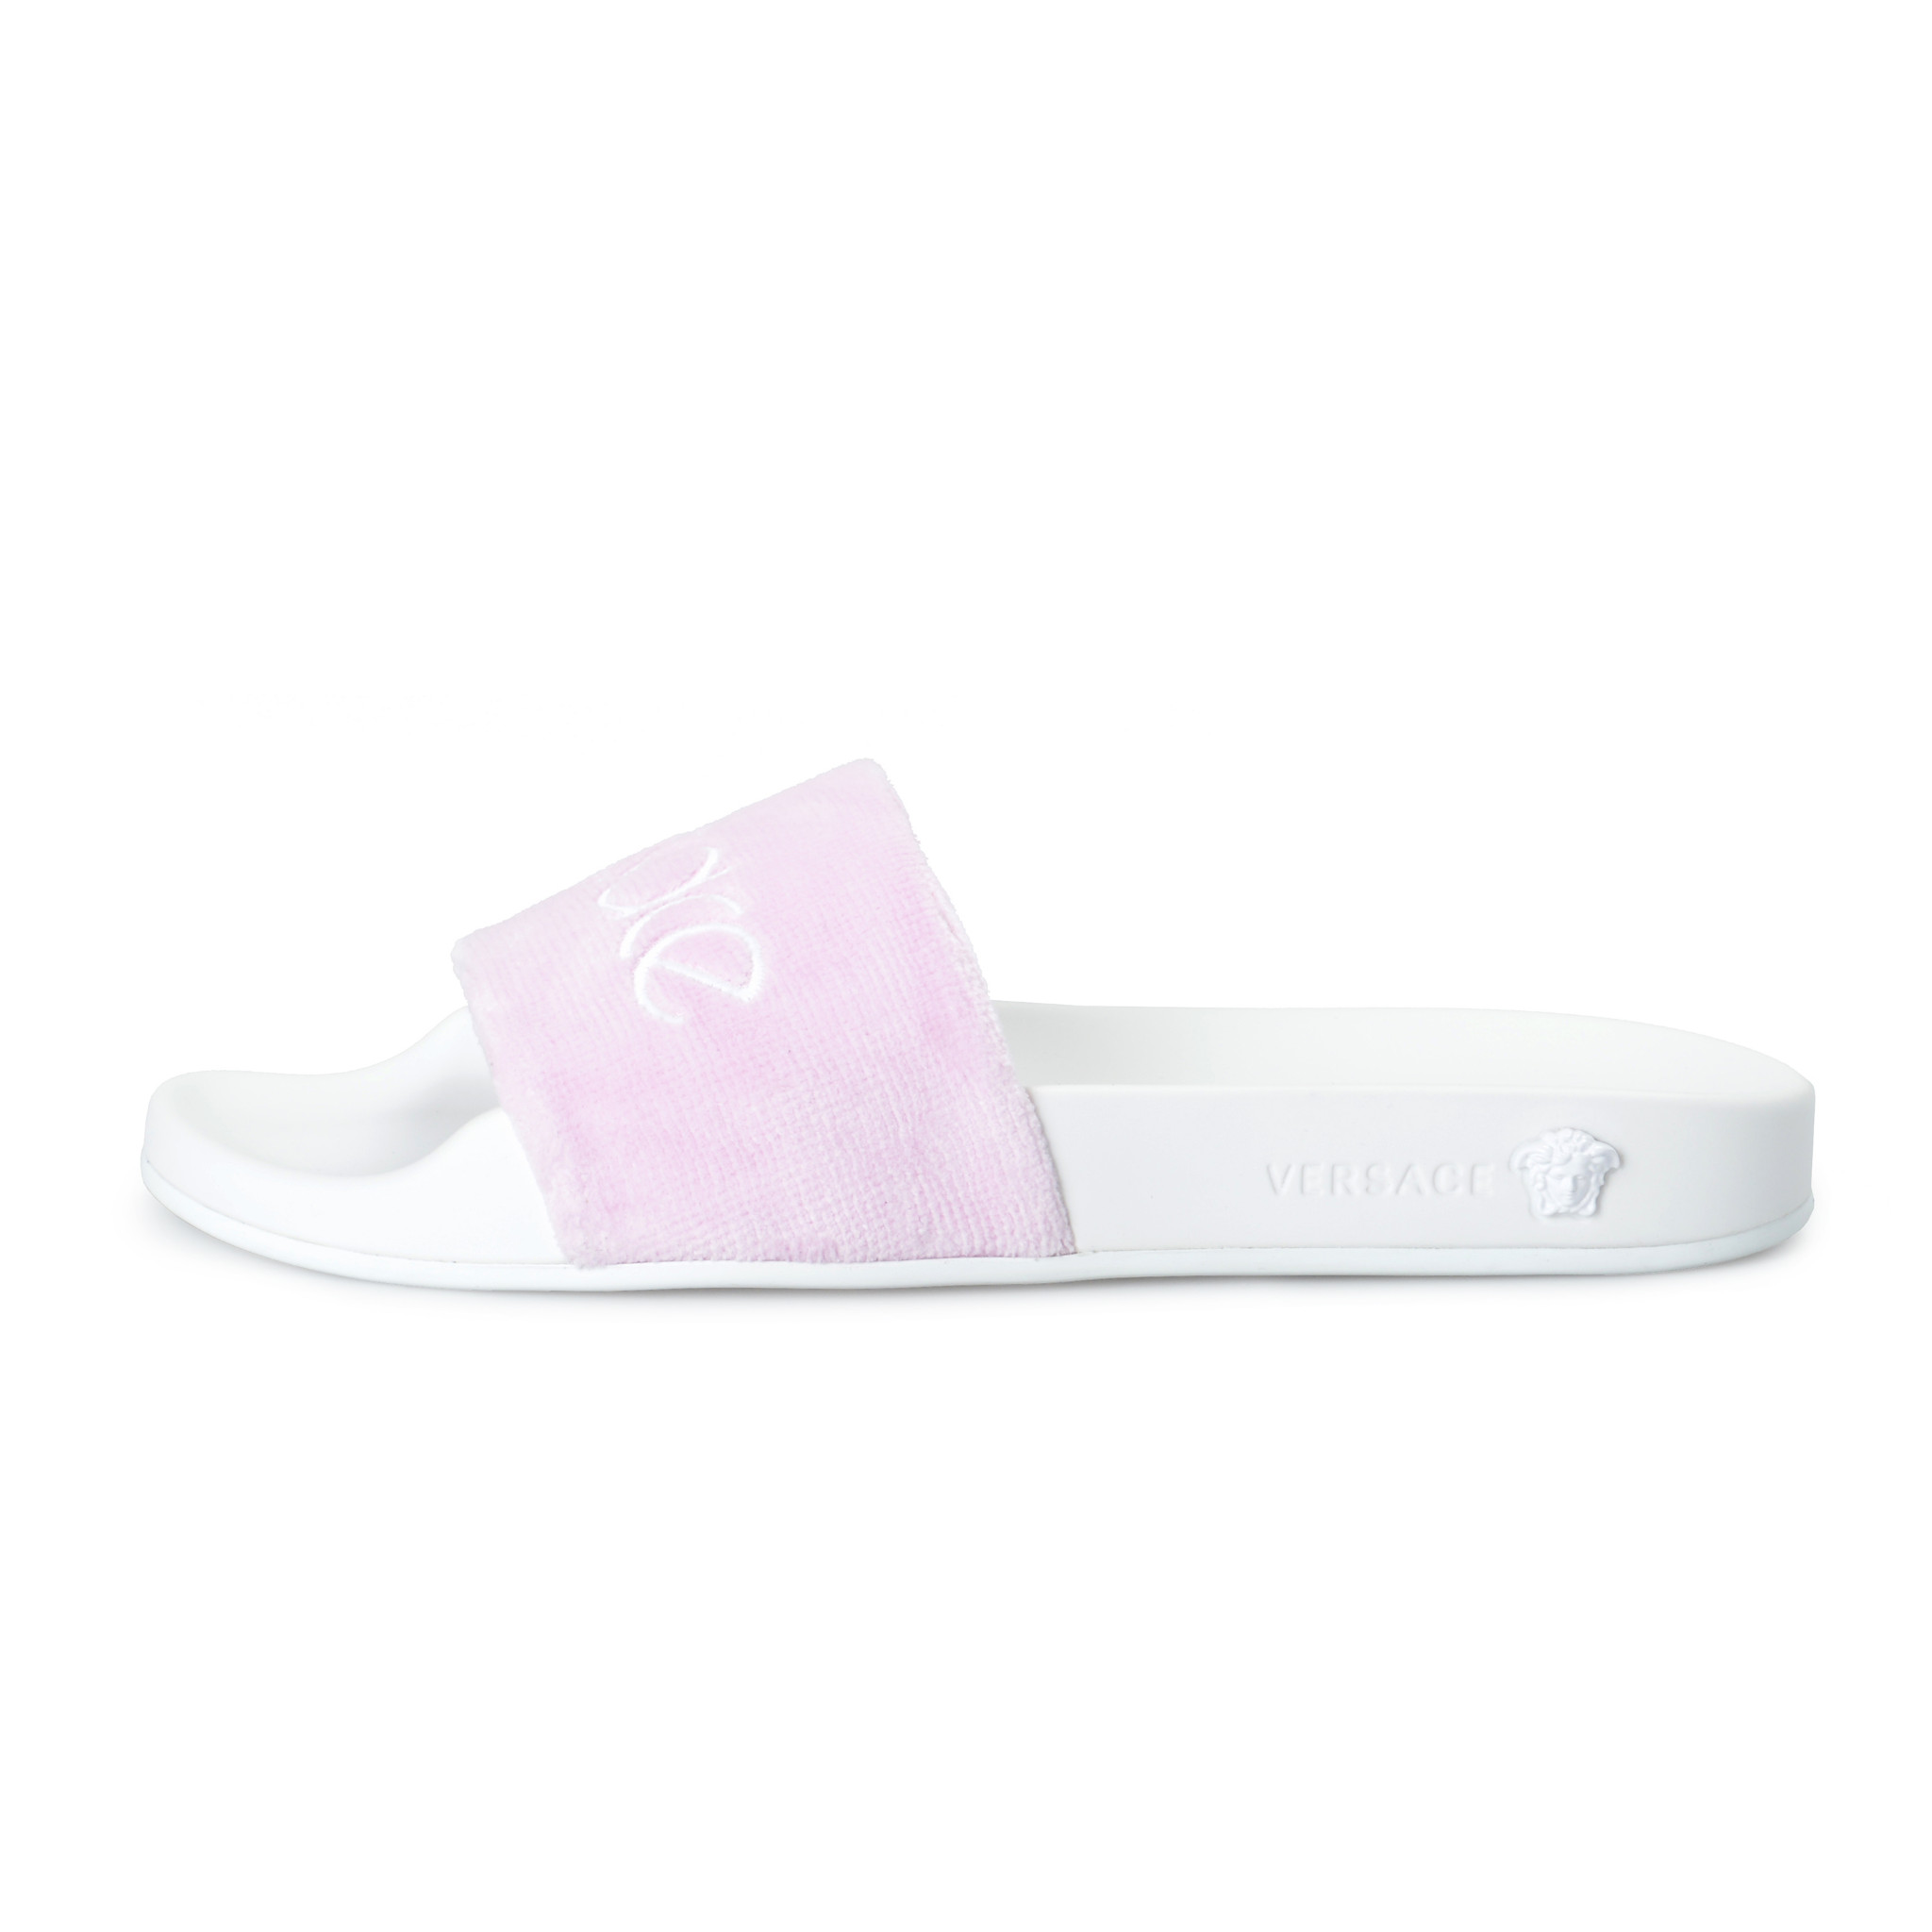 versace pink flip flops